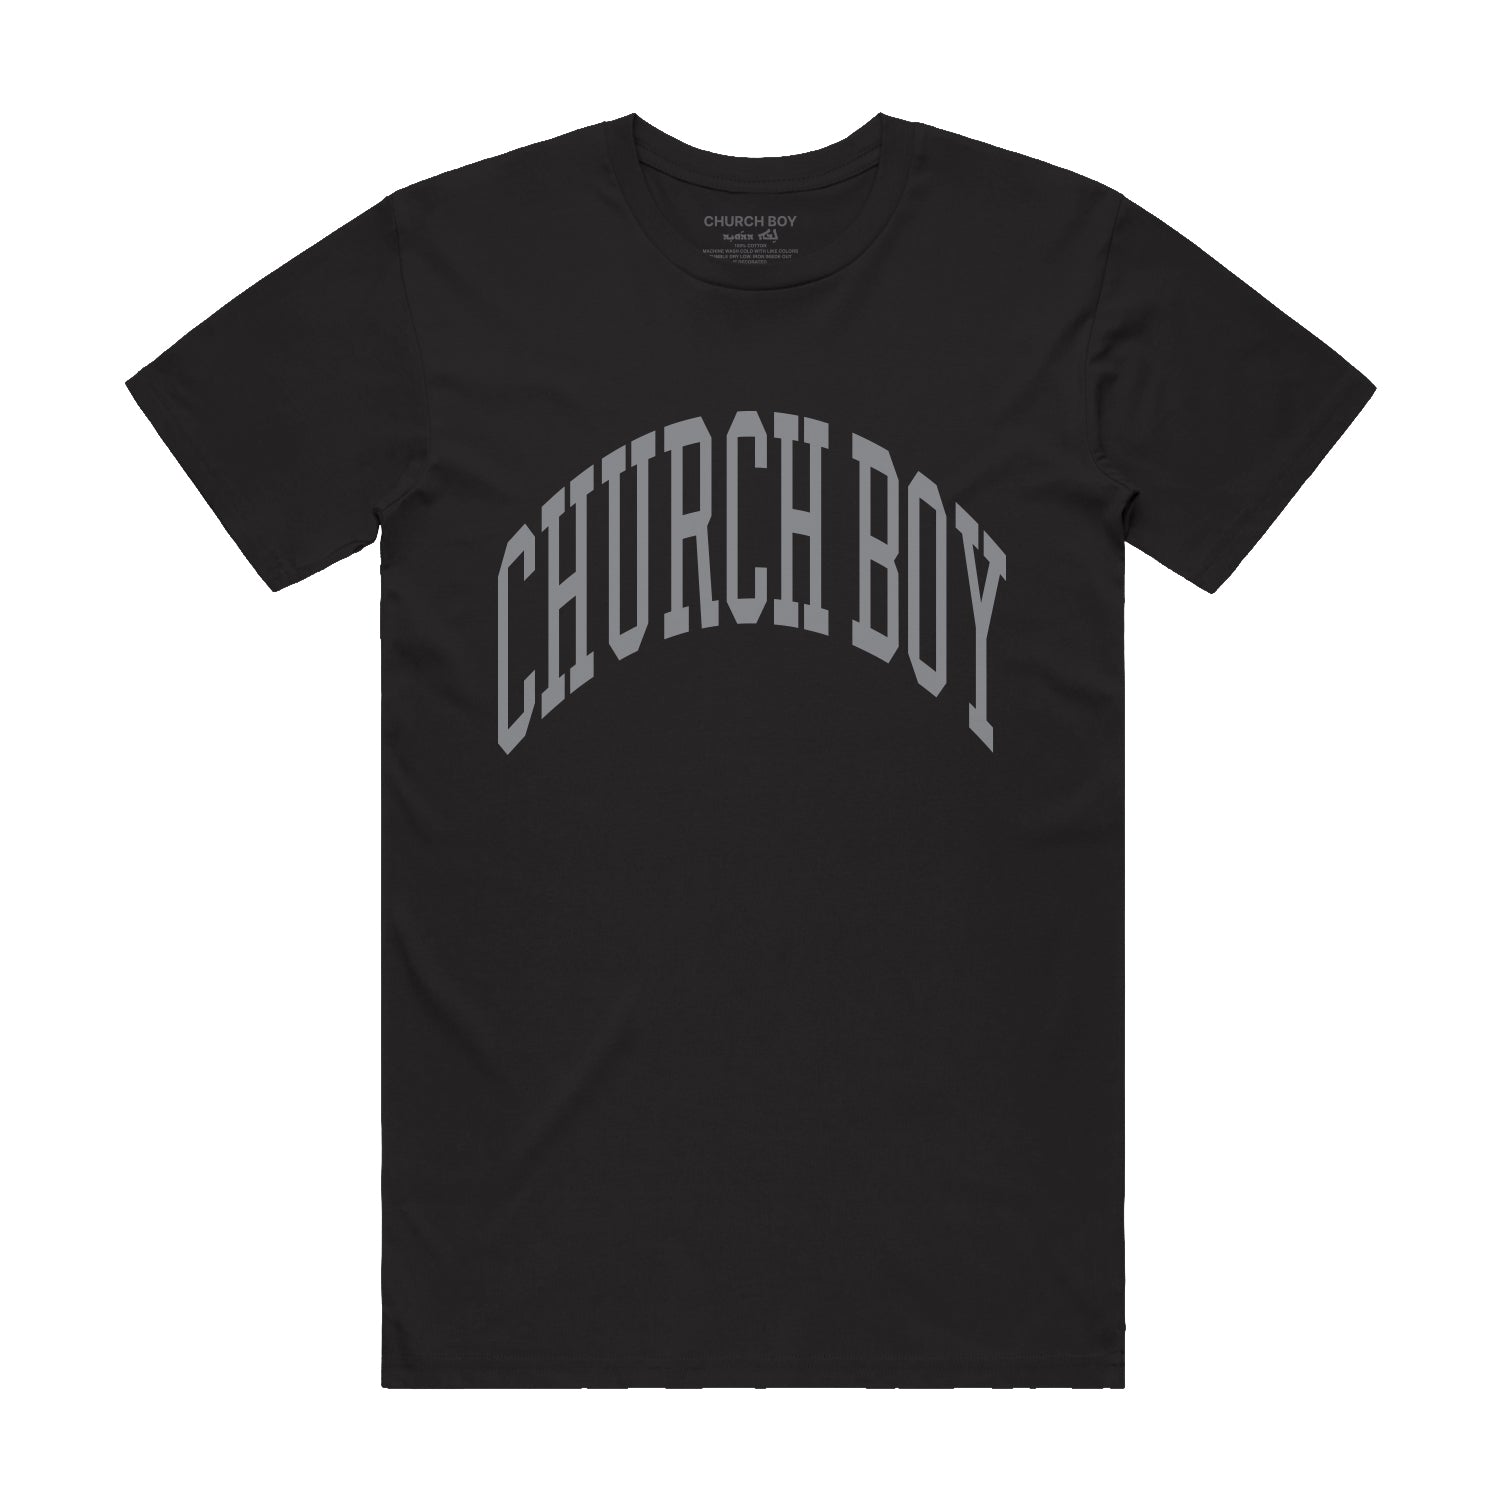 Tshirt - Black Church Boy